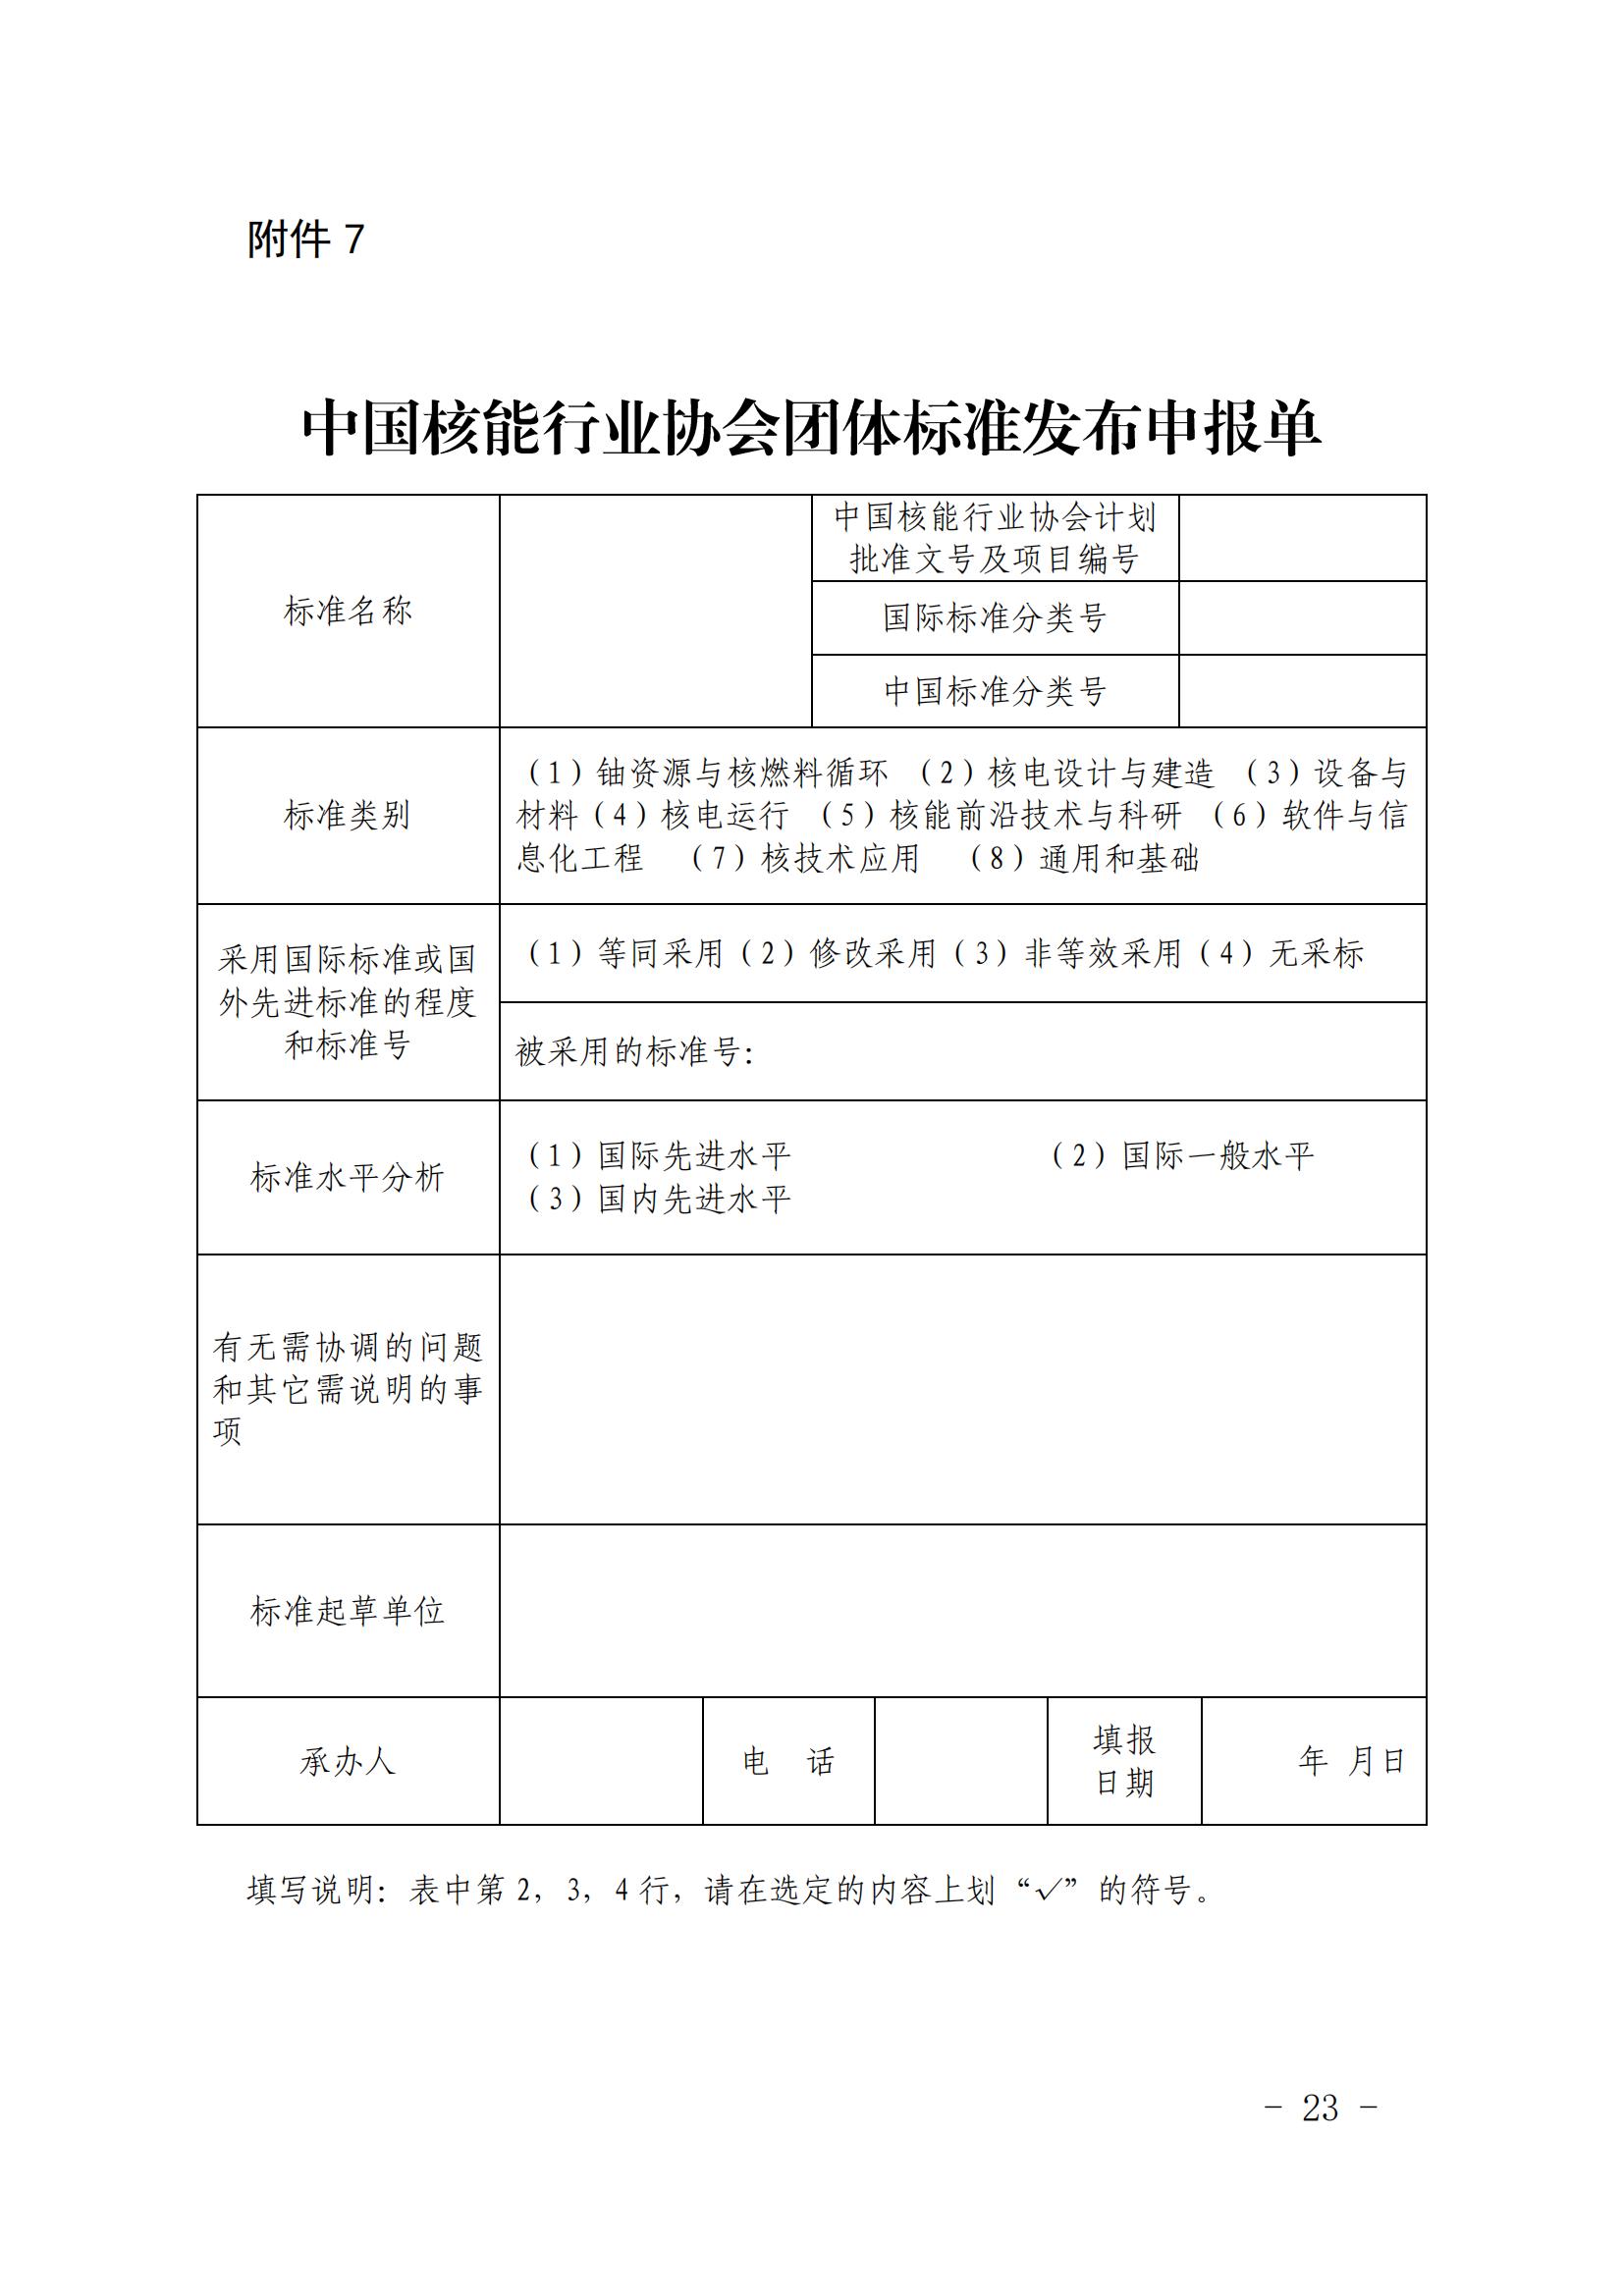 关于印发《中国核能行业协会团体标准管理办法（试行）》和《中国核能行业协会团体标准制修订细则（试行）》的通知_22.jpg